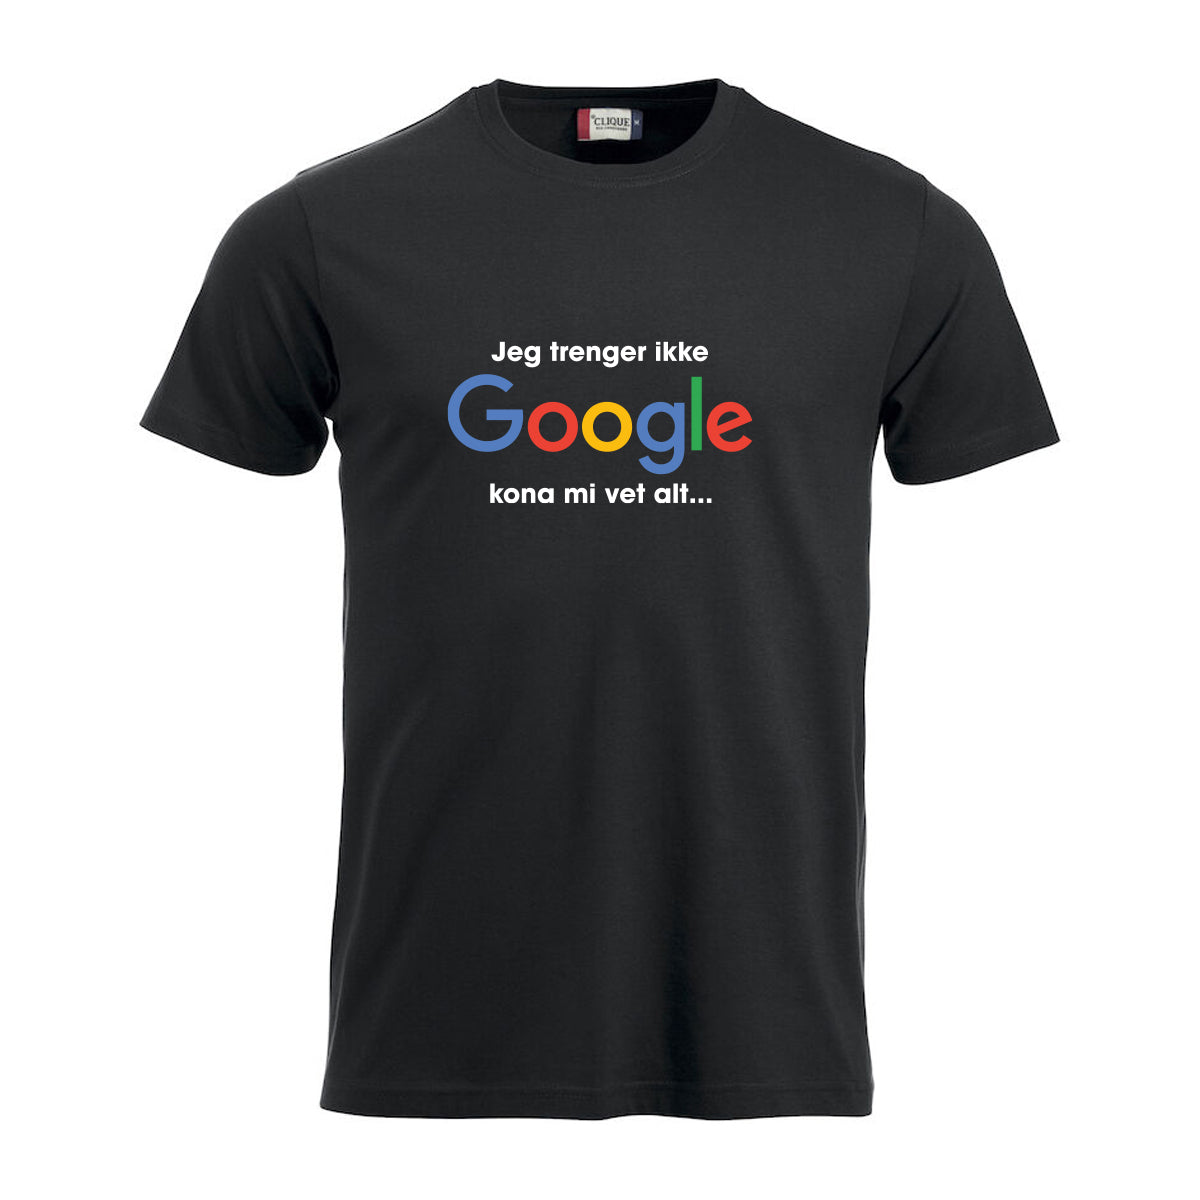 Trenger ikke Google - tskjorte